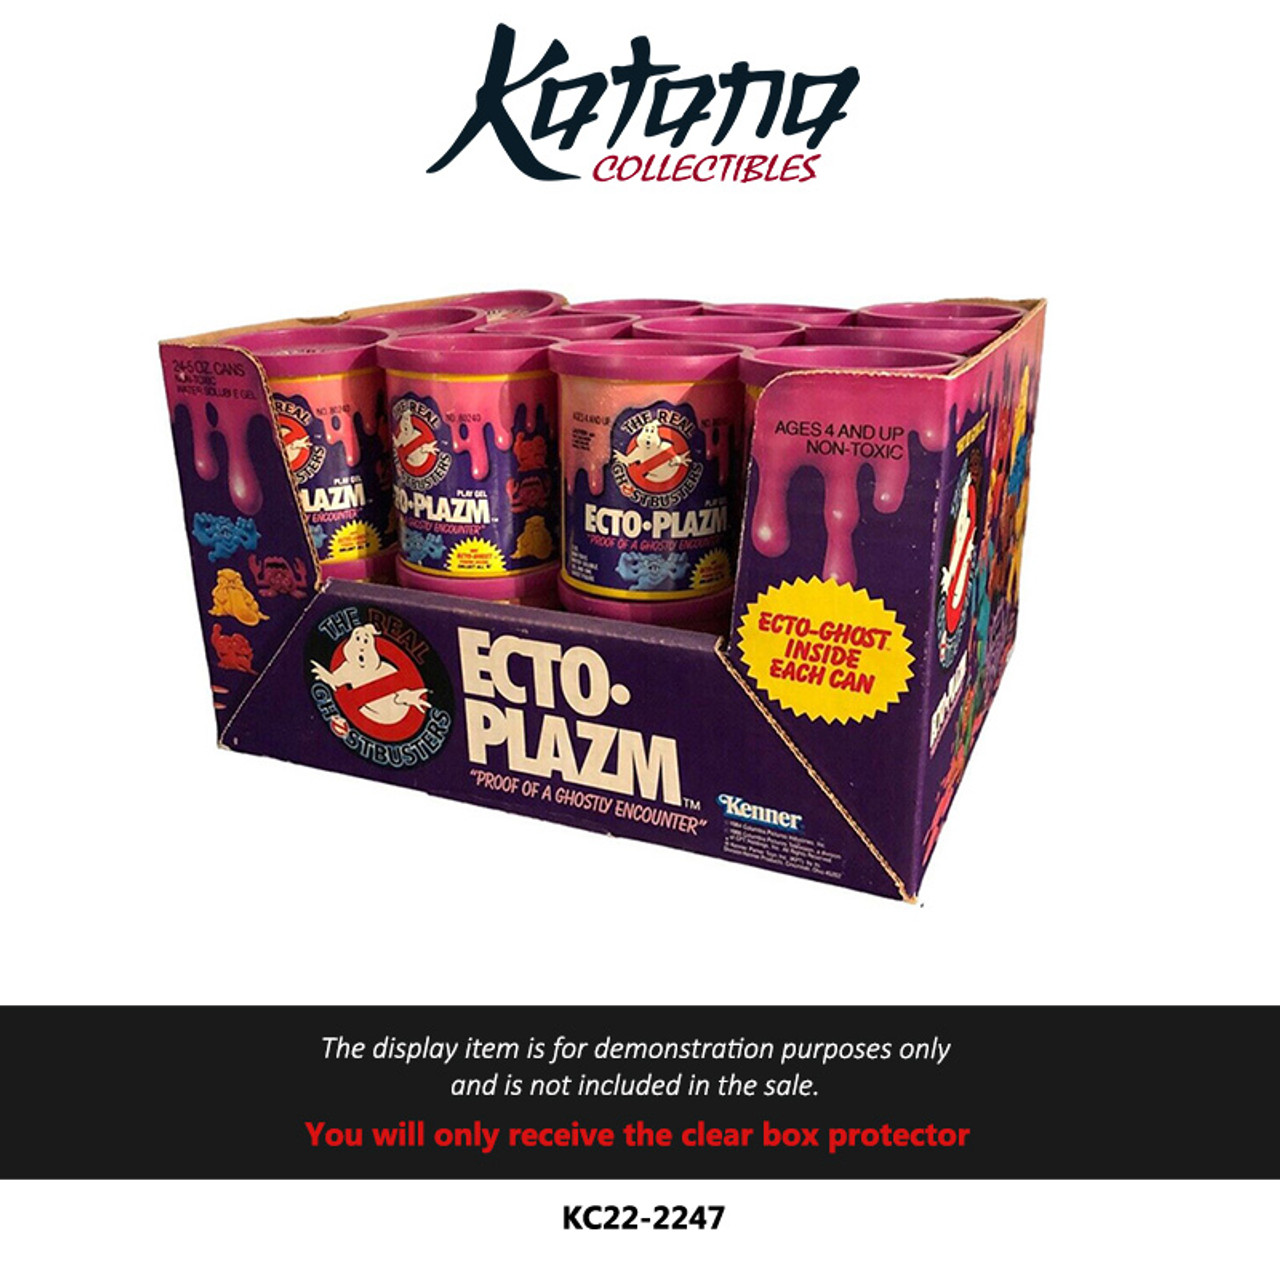 Katana Collectibles Protector For Purple Ecto Plazm display